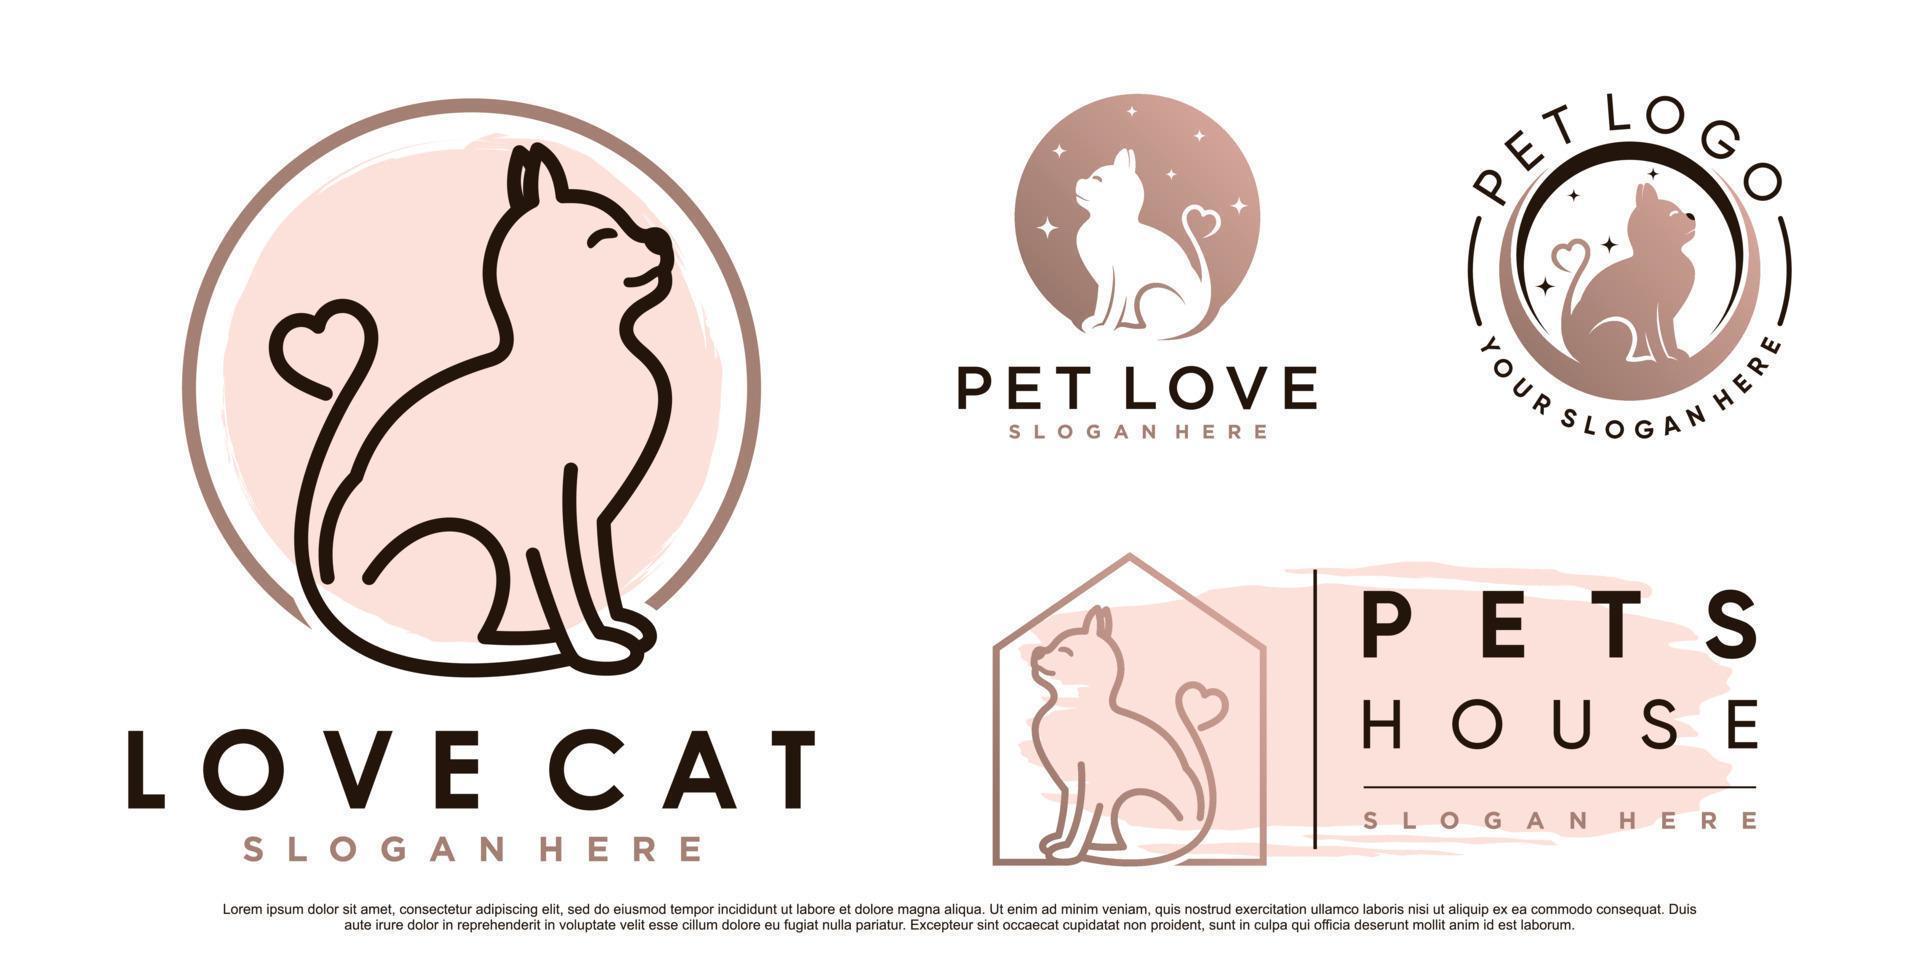 definir coleção de design de logotipo de animais de gato com elemento de amor e vetor premium de conceito criativo